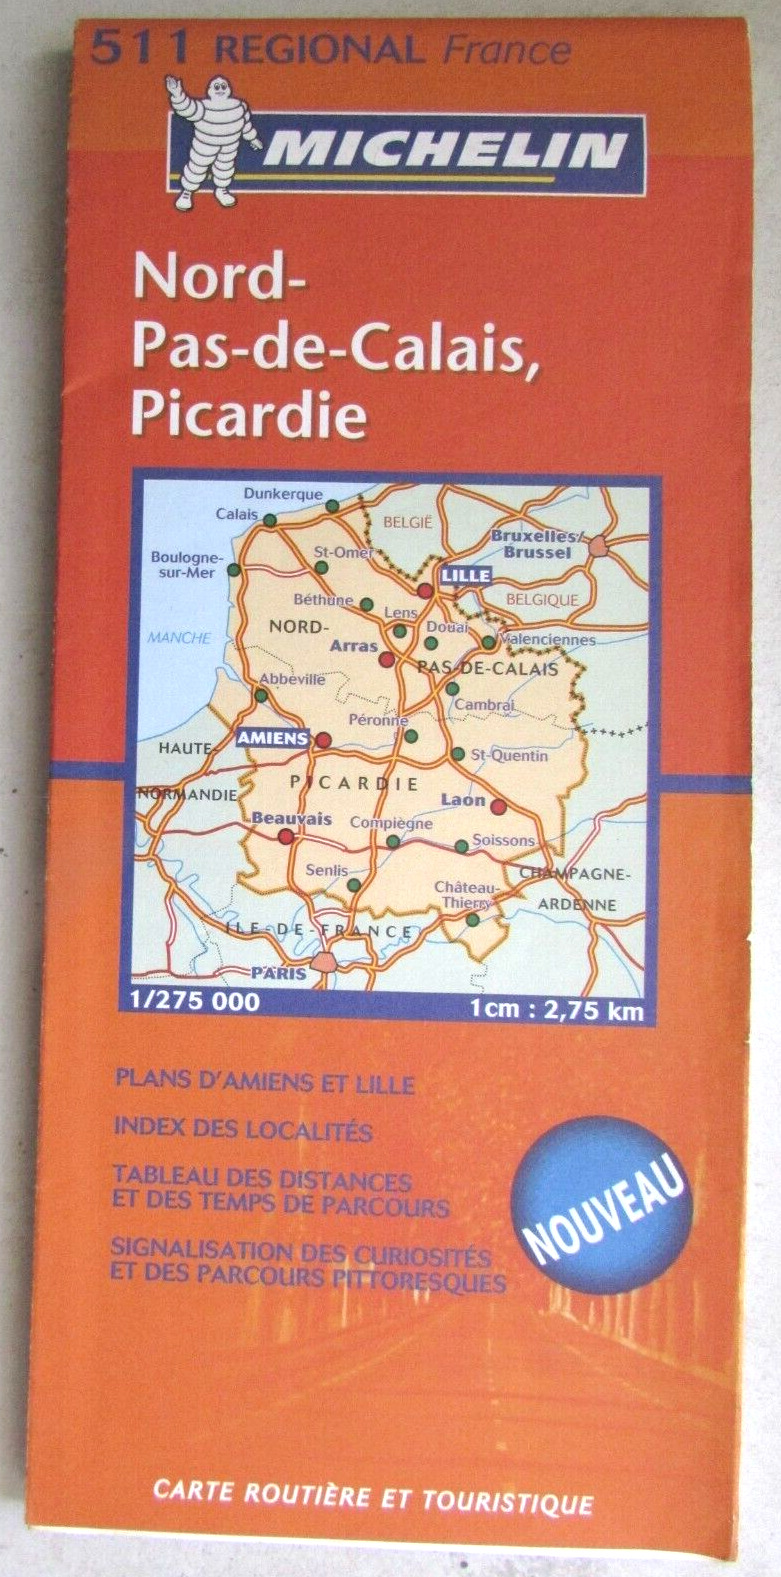 Michelin 511 Regional Roadmap France Nord-Pas-de-Calais, Picardy 2004